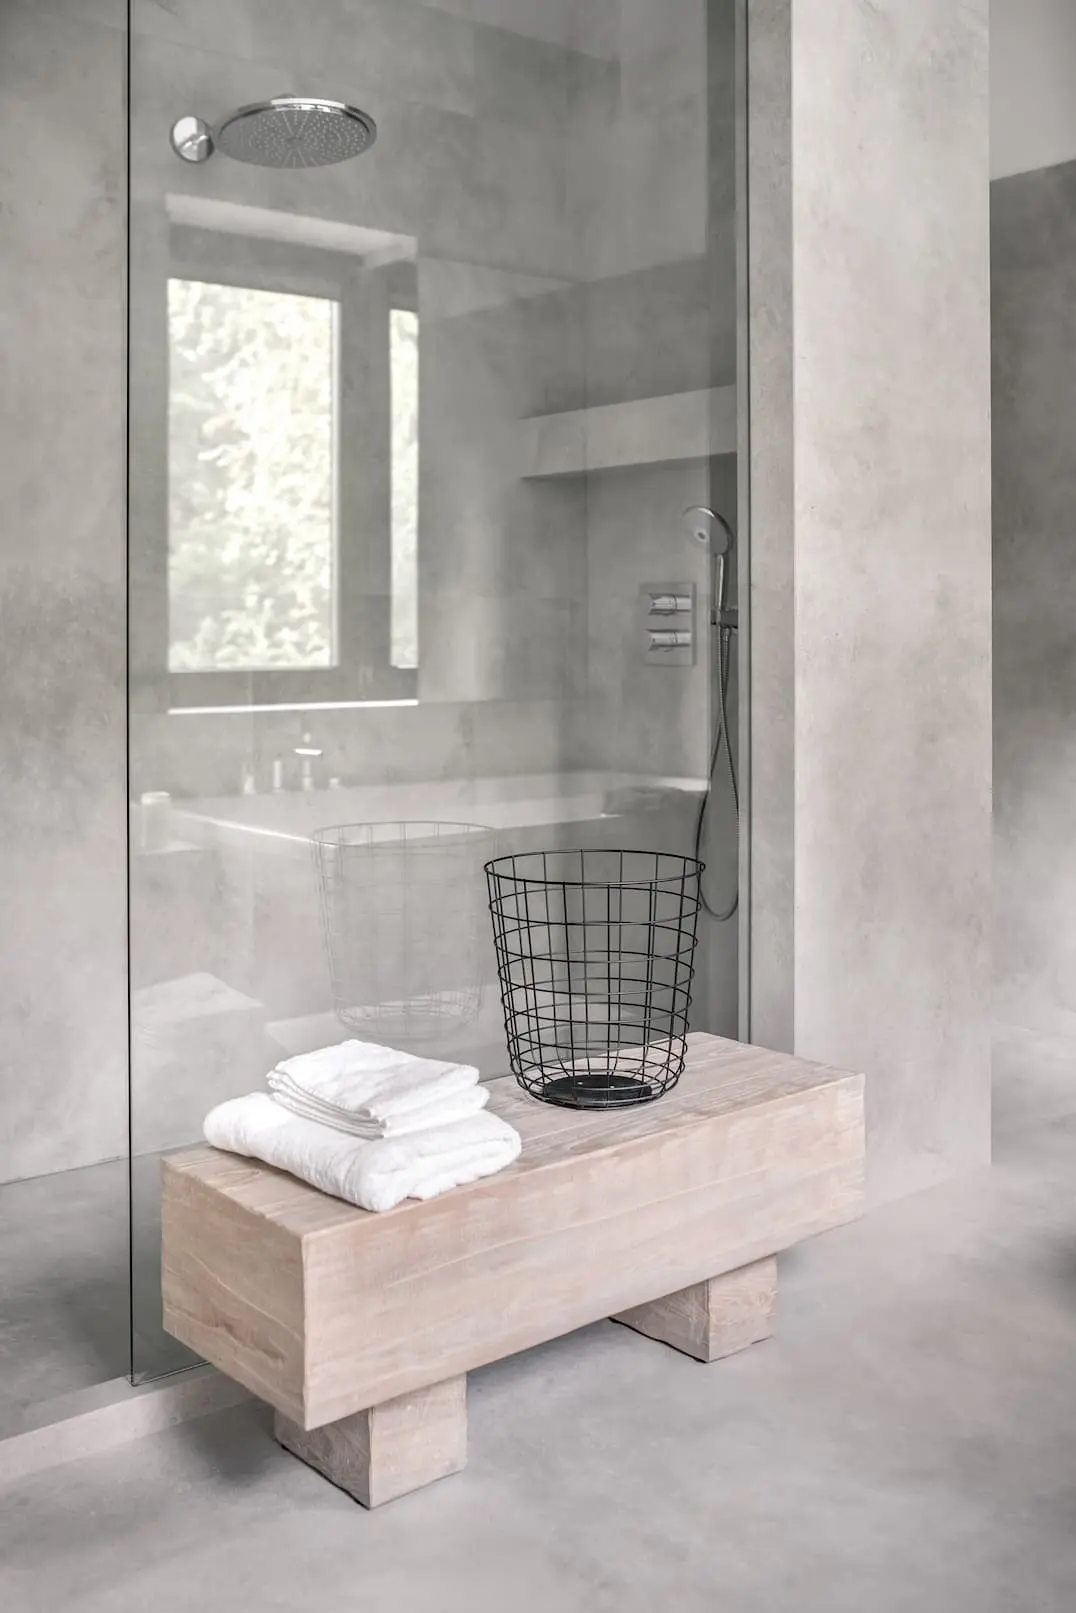 Tamamen dekoratif çimento kullanılan duş